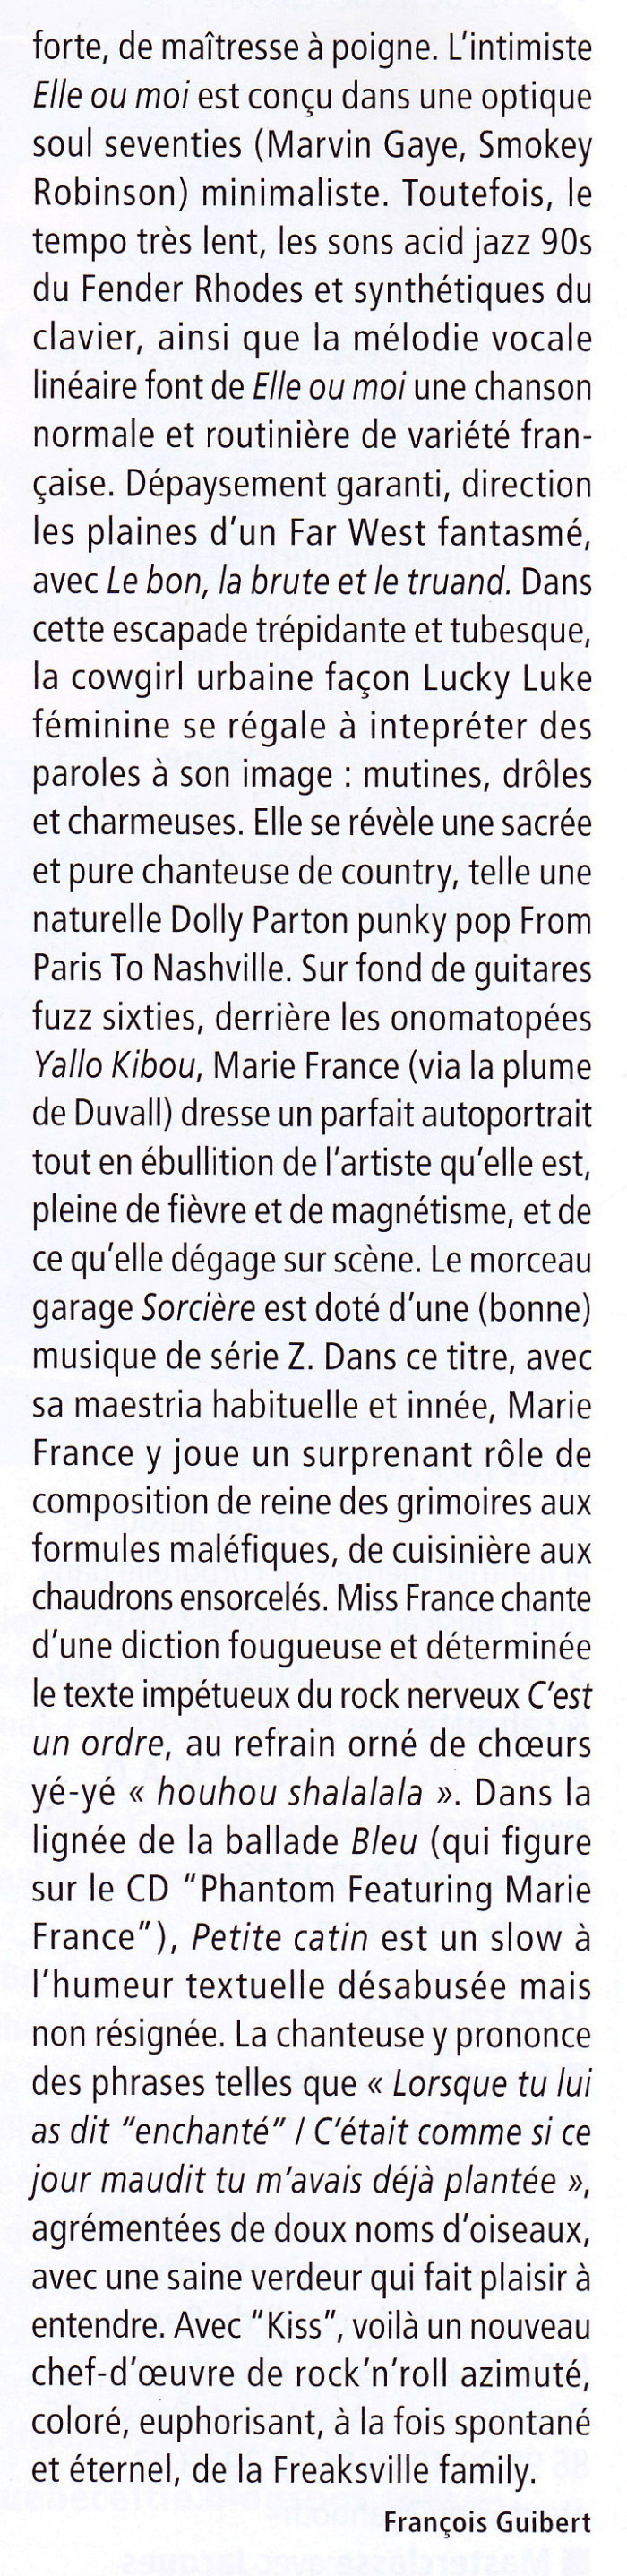 MARIE FRANCE & LES FANTÔMES + BENJAMIN SCHOOS 09/05/2012 au RÉSERVOIR (Paris) : compte rendu 1201250908481423619347296